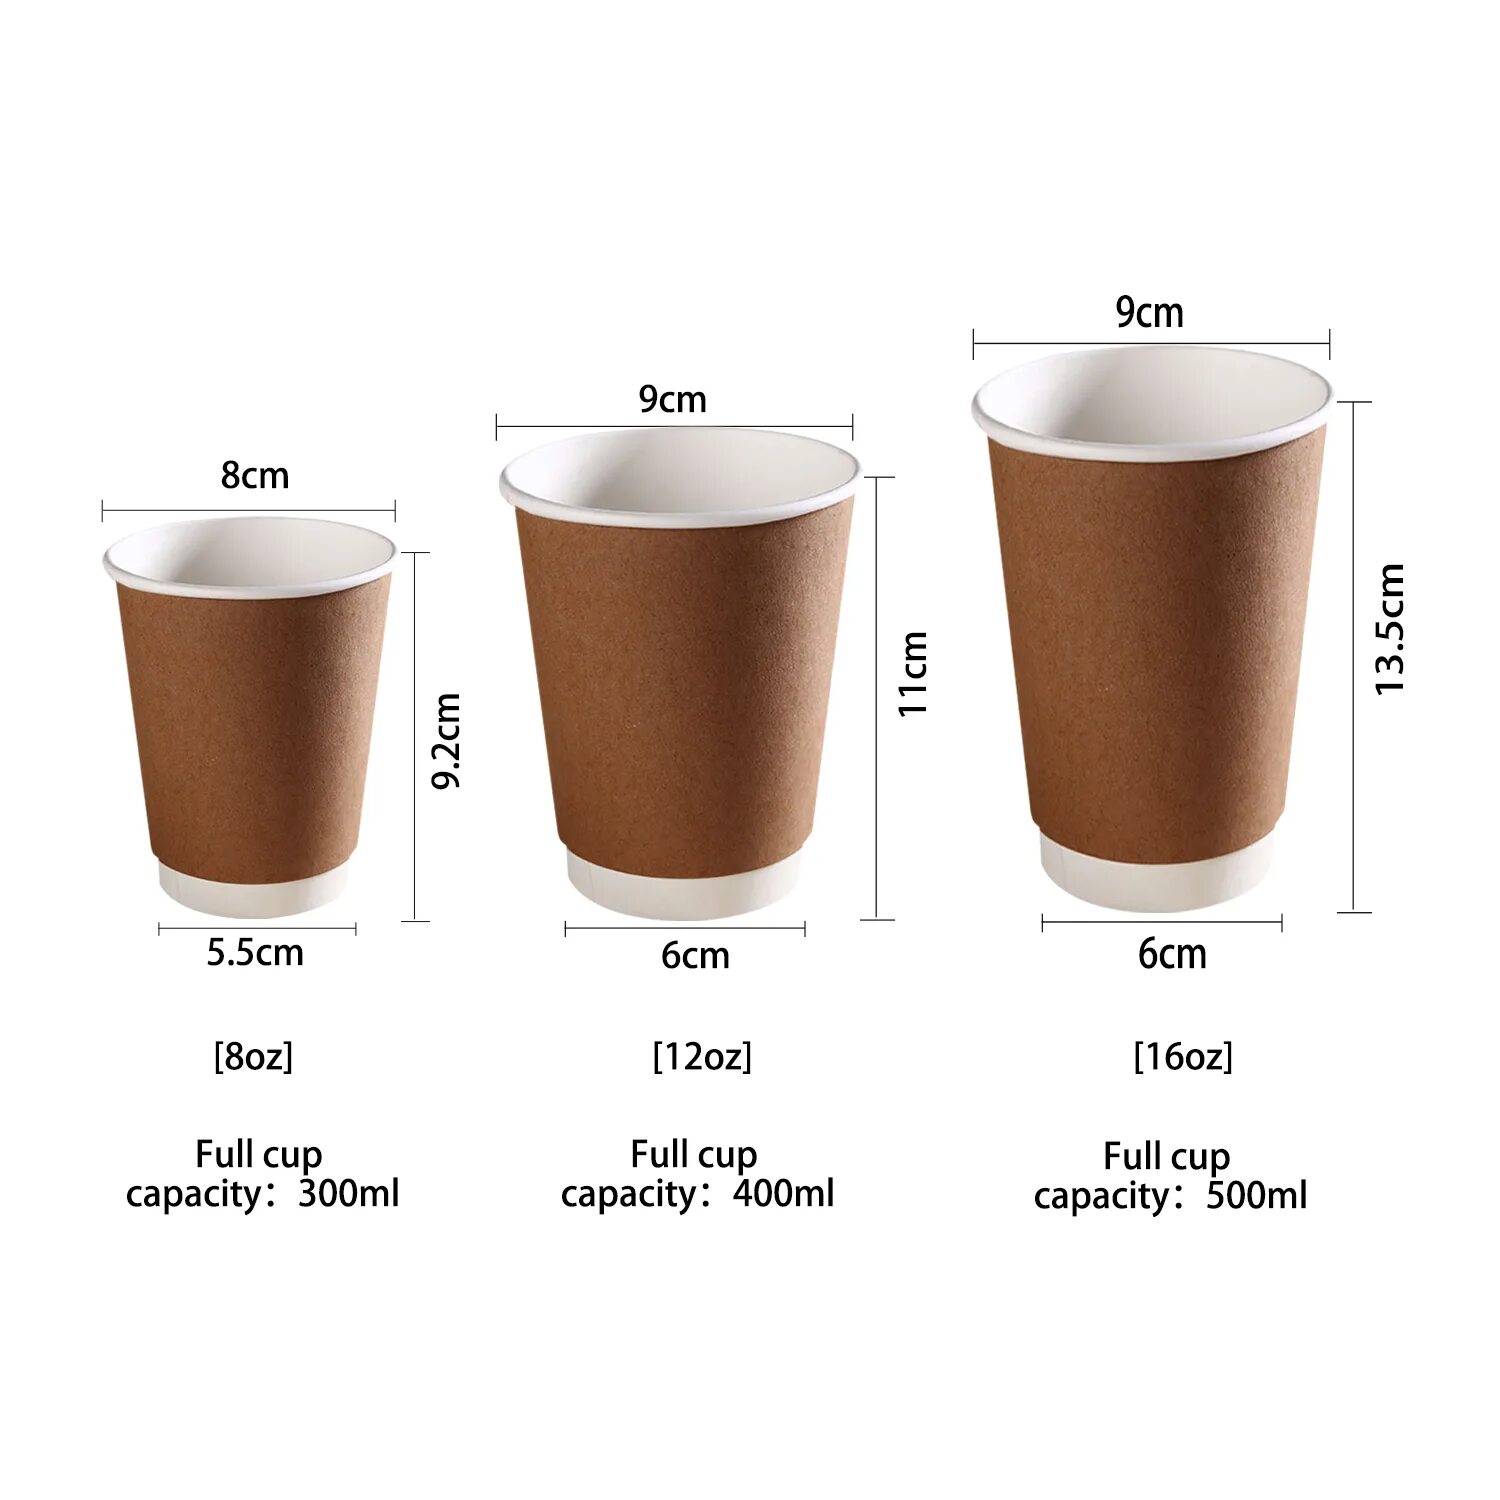 Какой диаметр стакана. Размеры стаканчиков для кофе. Объемы стаканов для кофе. Размеры стаканов для кофе. Размеры бумажных стаканчиков для кофе.